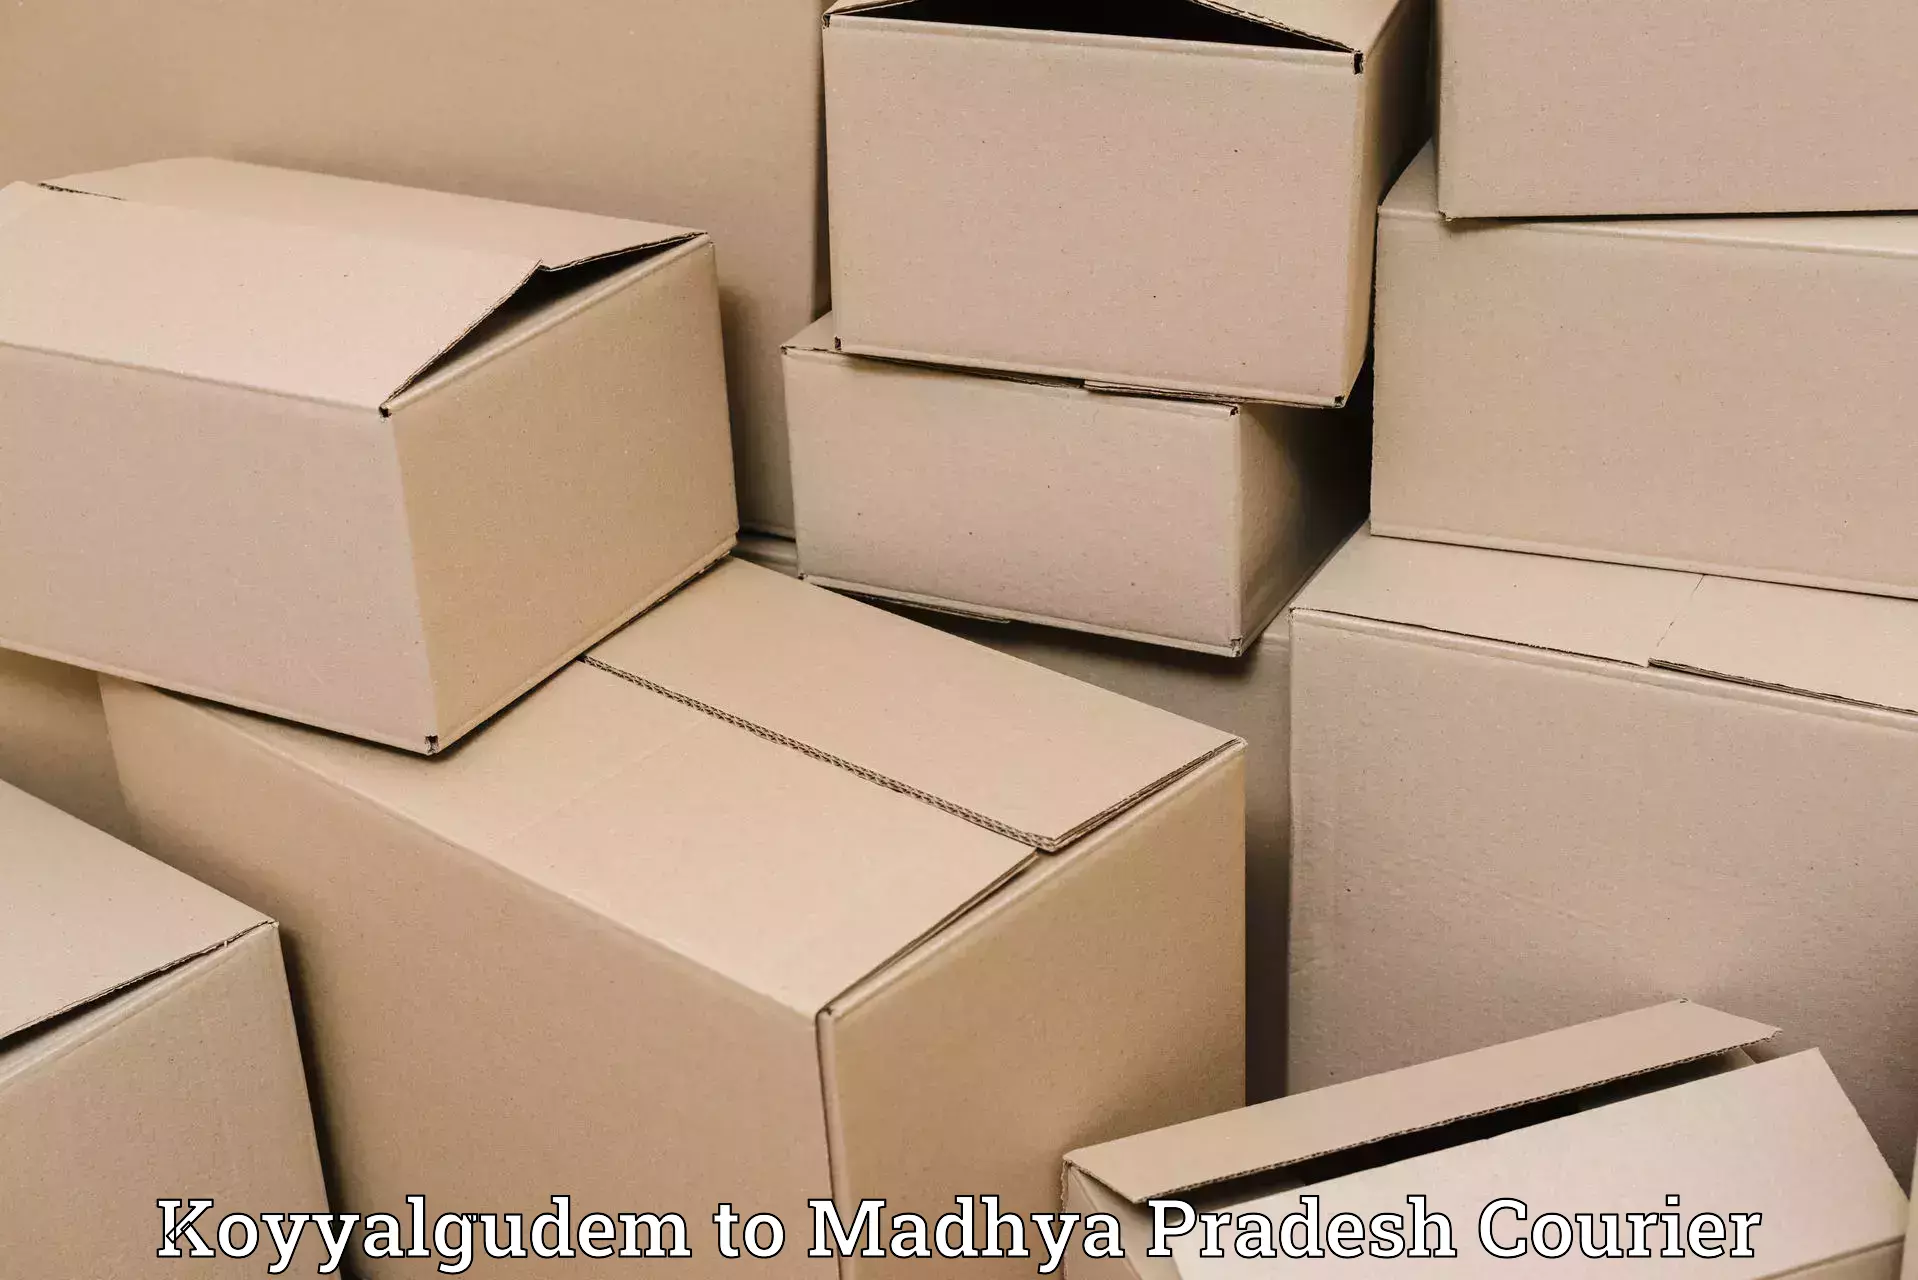 High value parcel delivery Koyyalgudem to Khandwa